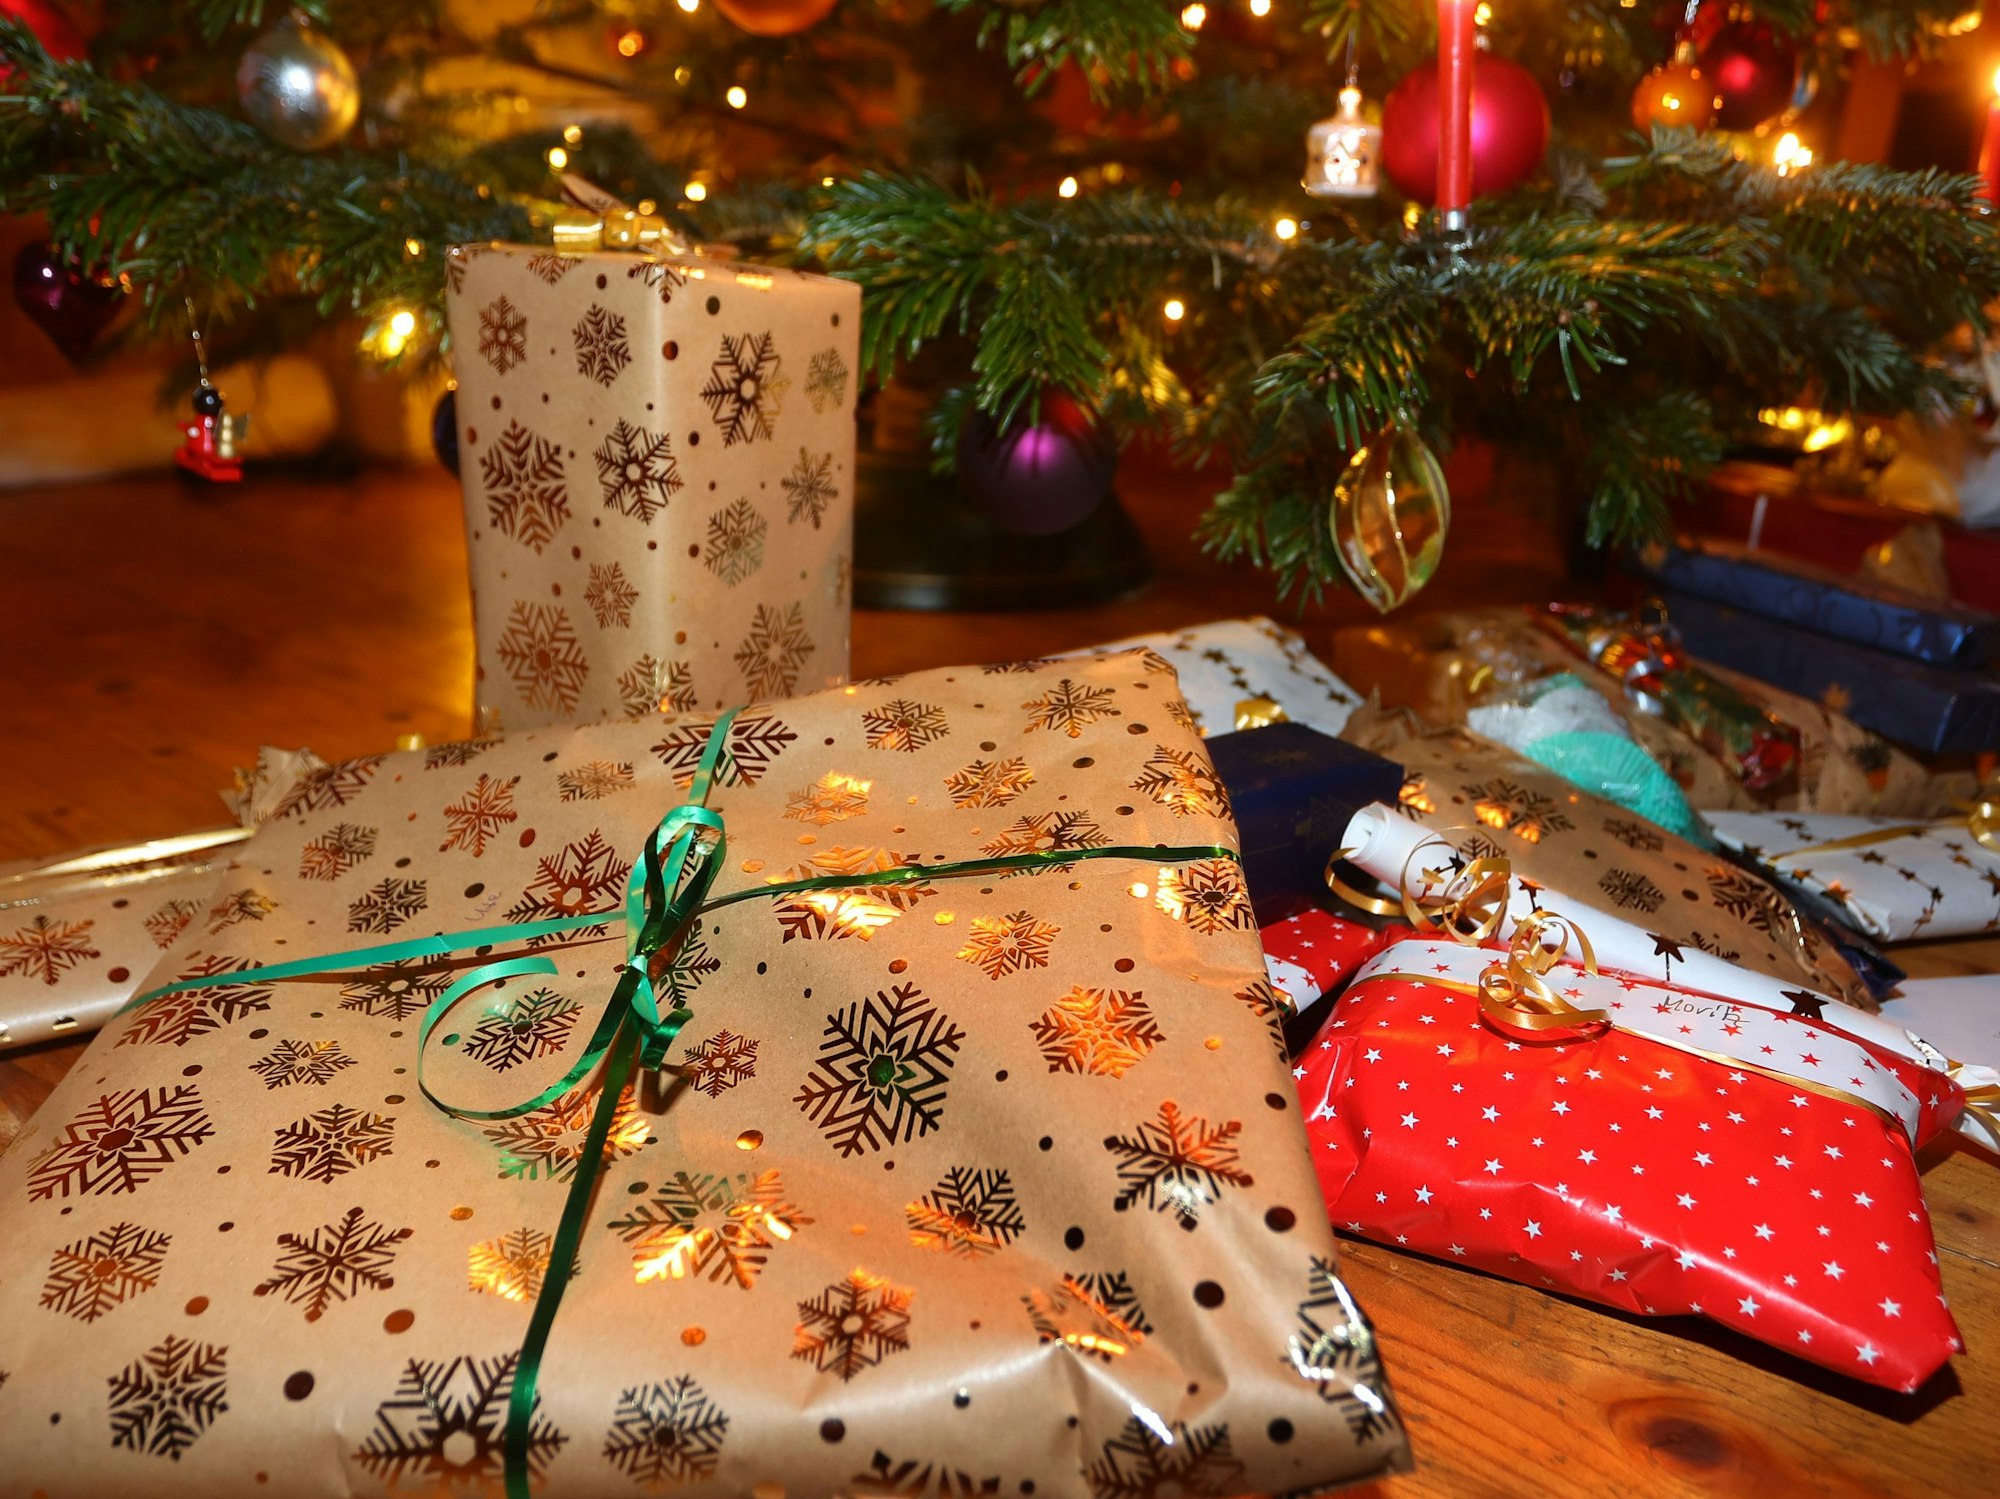 Verpackte Geschenke liegen in einem Wohnzimmer unter einem festlich geschmücktem Weihnachtsbaum.